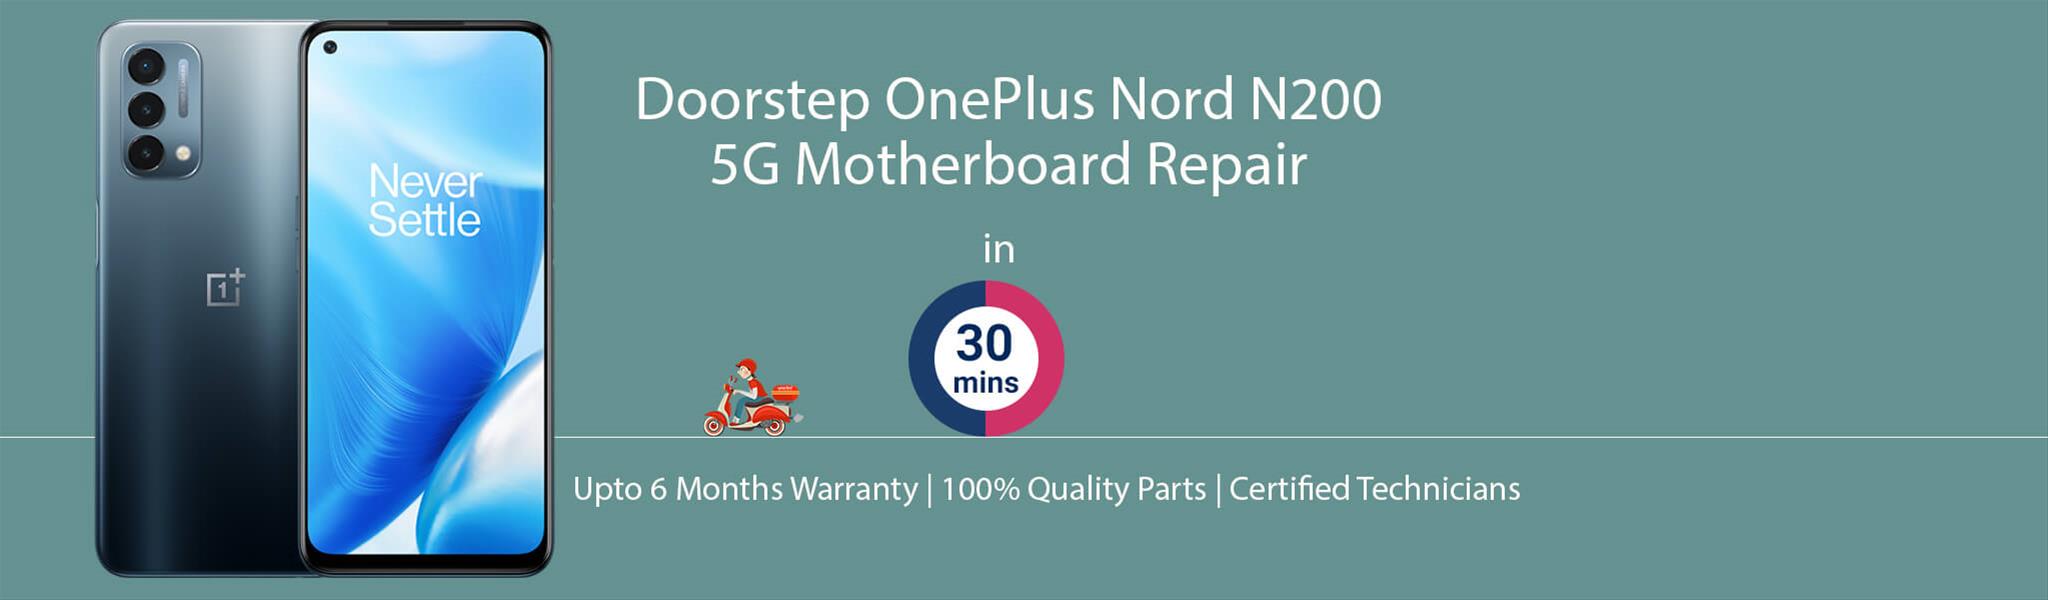 oneplus-nord-n200-5g-motherboard-repair.jpg